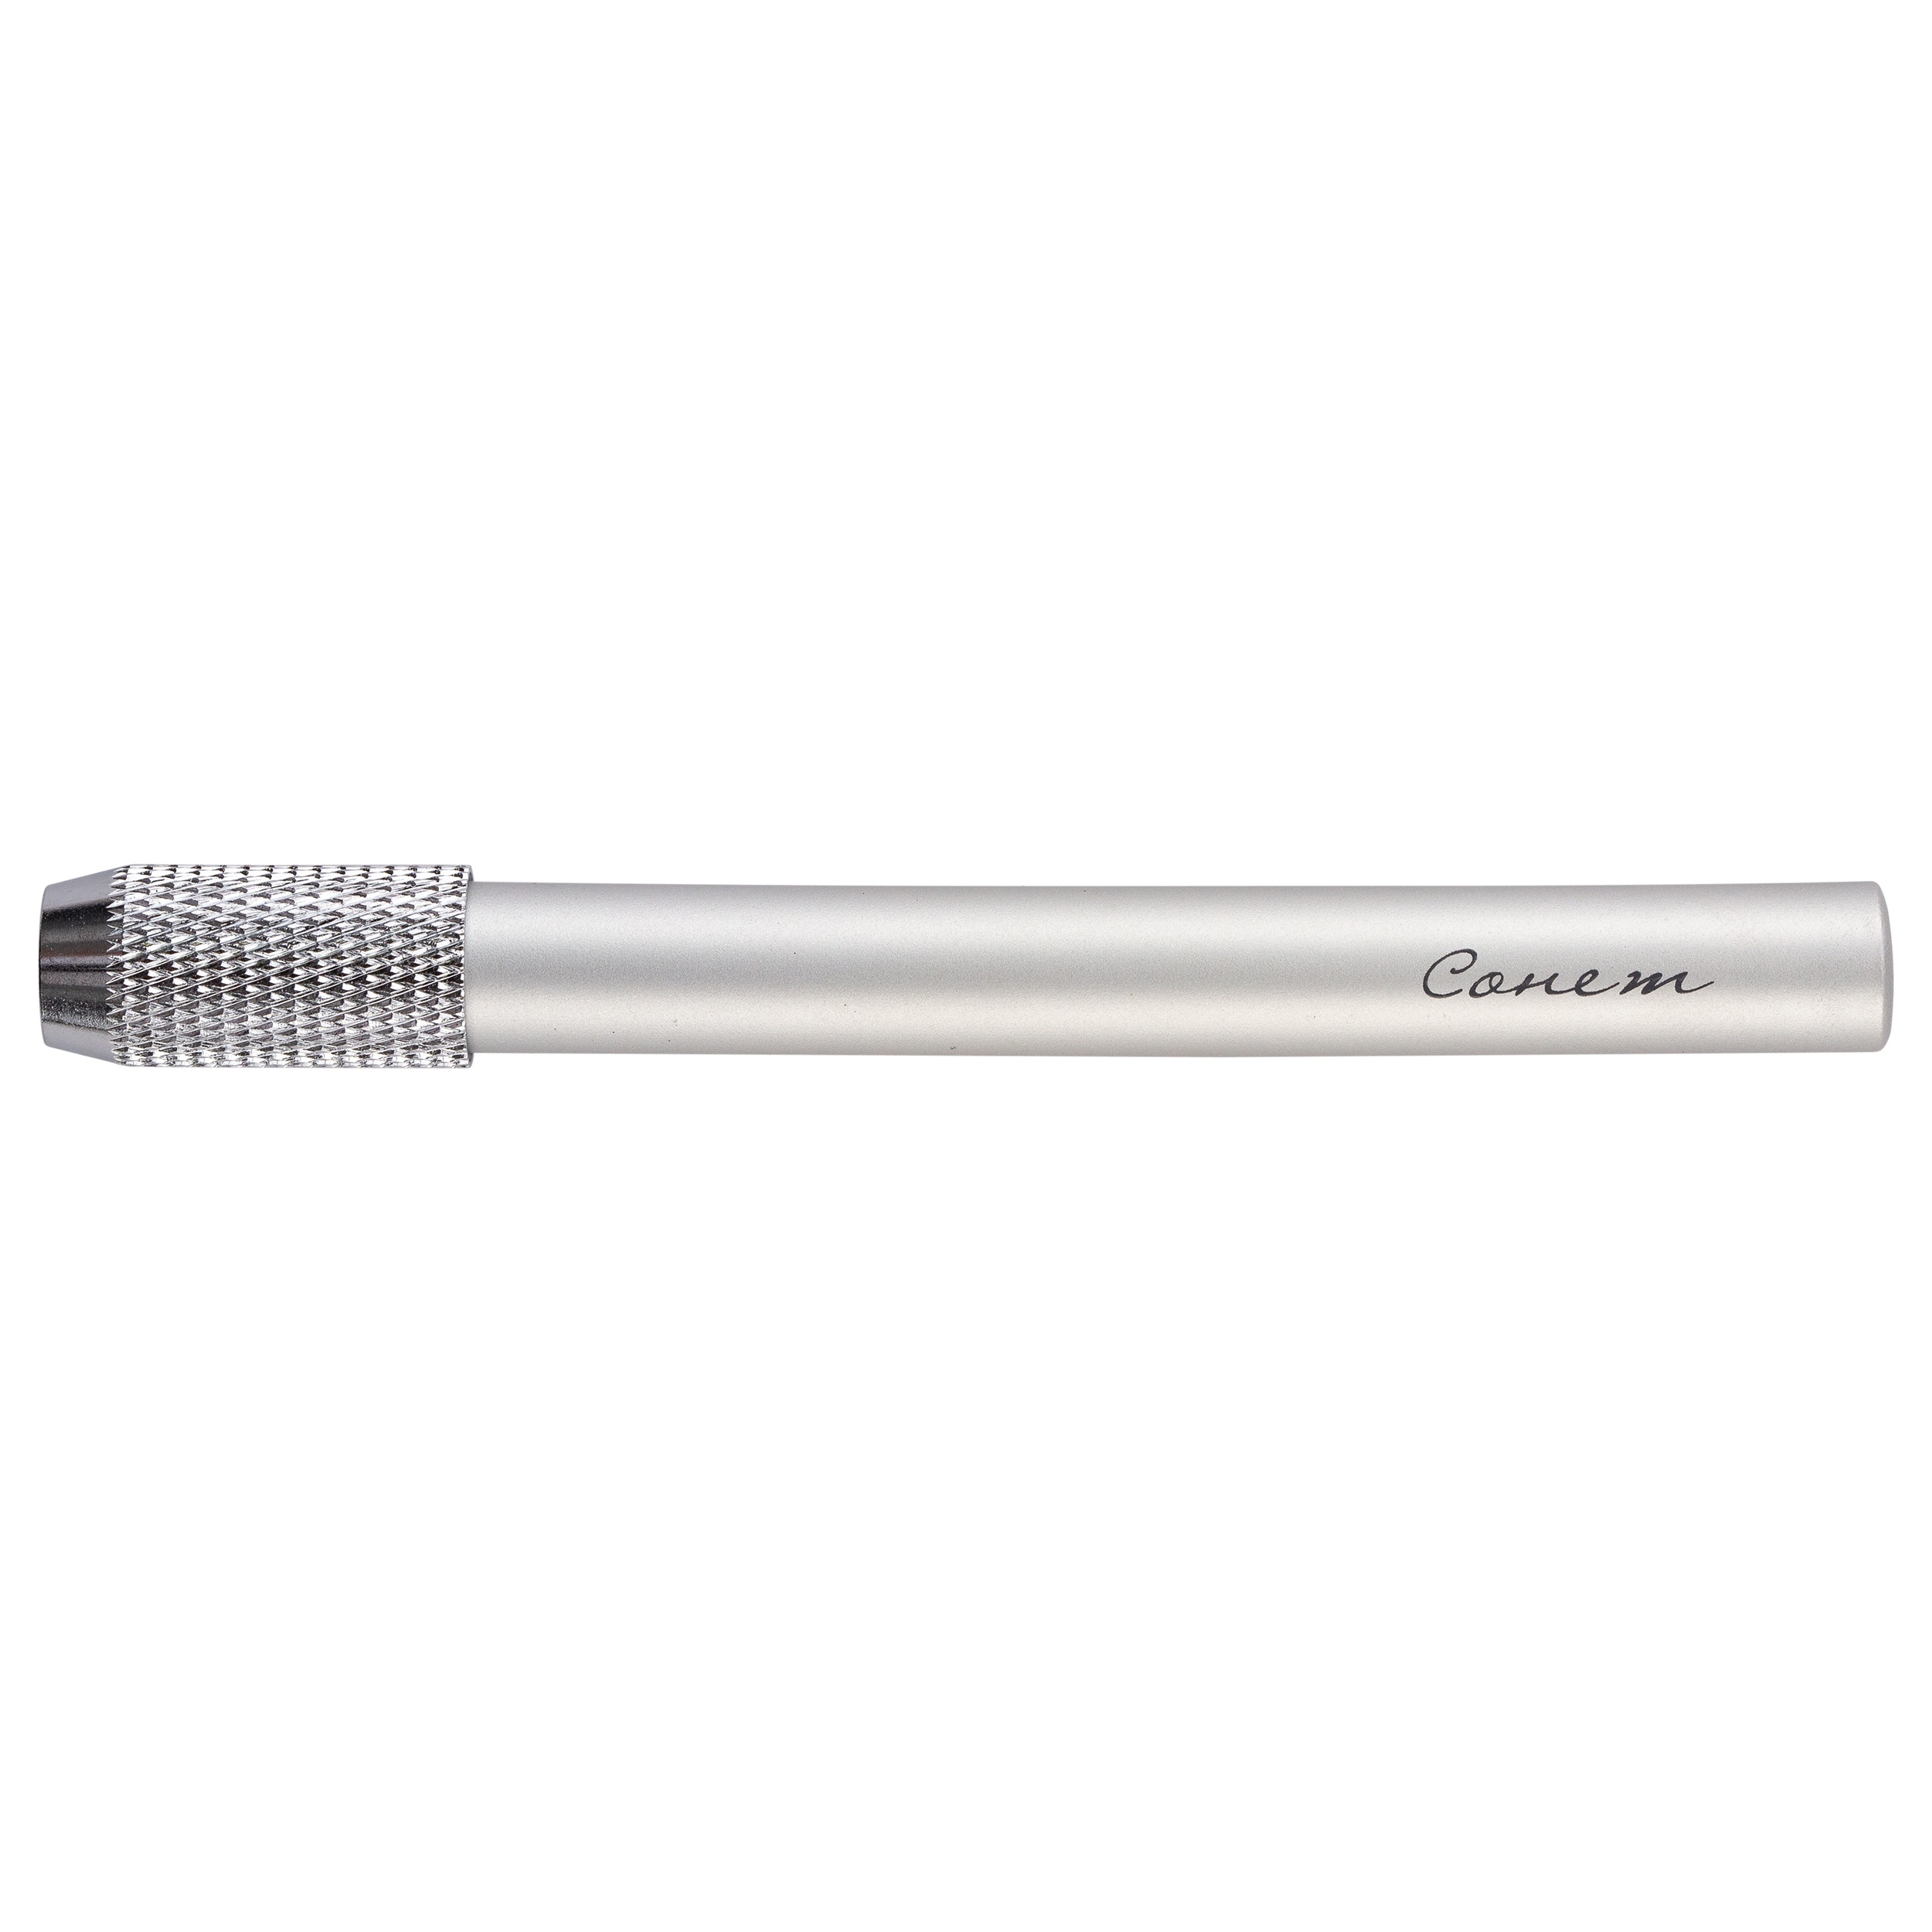 Удлинитель для карандаша СОНЕТ d:7-7,8мм металл серебряный по 116.00 руб от Сонет